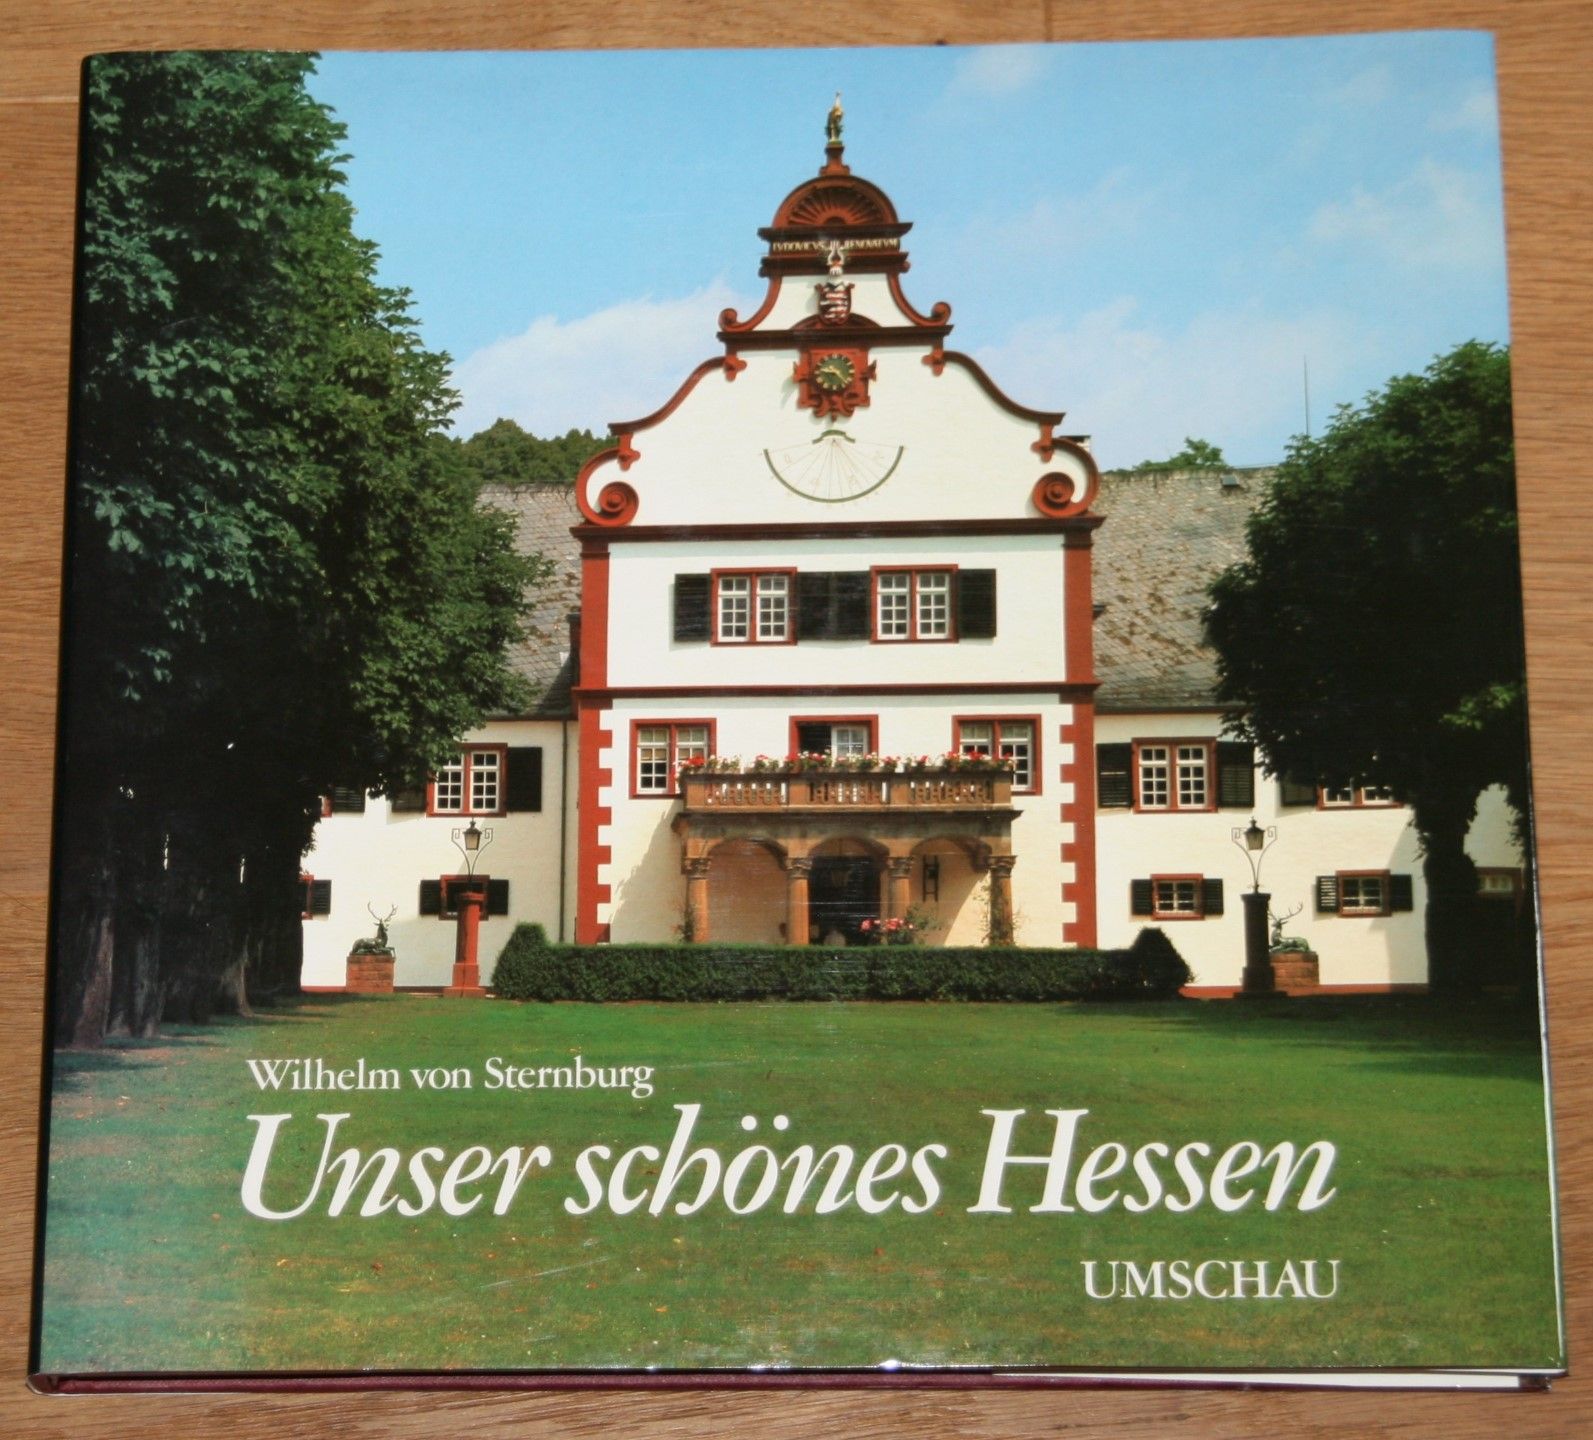 Unser schönes Hessen: Land der Mitte. [Hesse - our beautiful country. Notre beau Land de Hesse.] - von Sternburg, Wilhelm